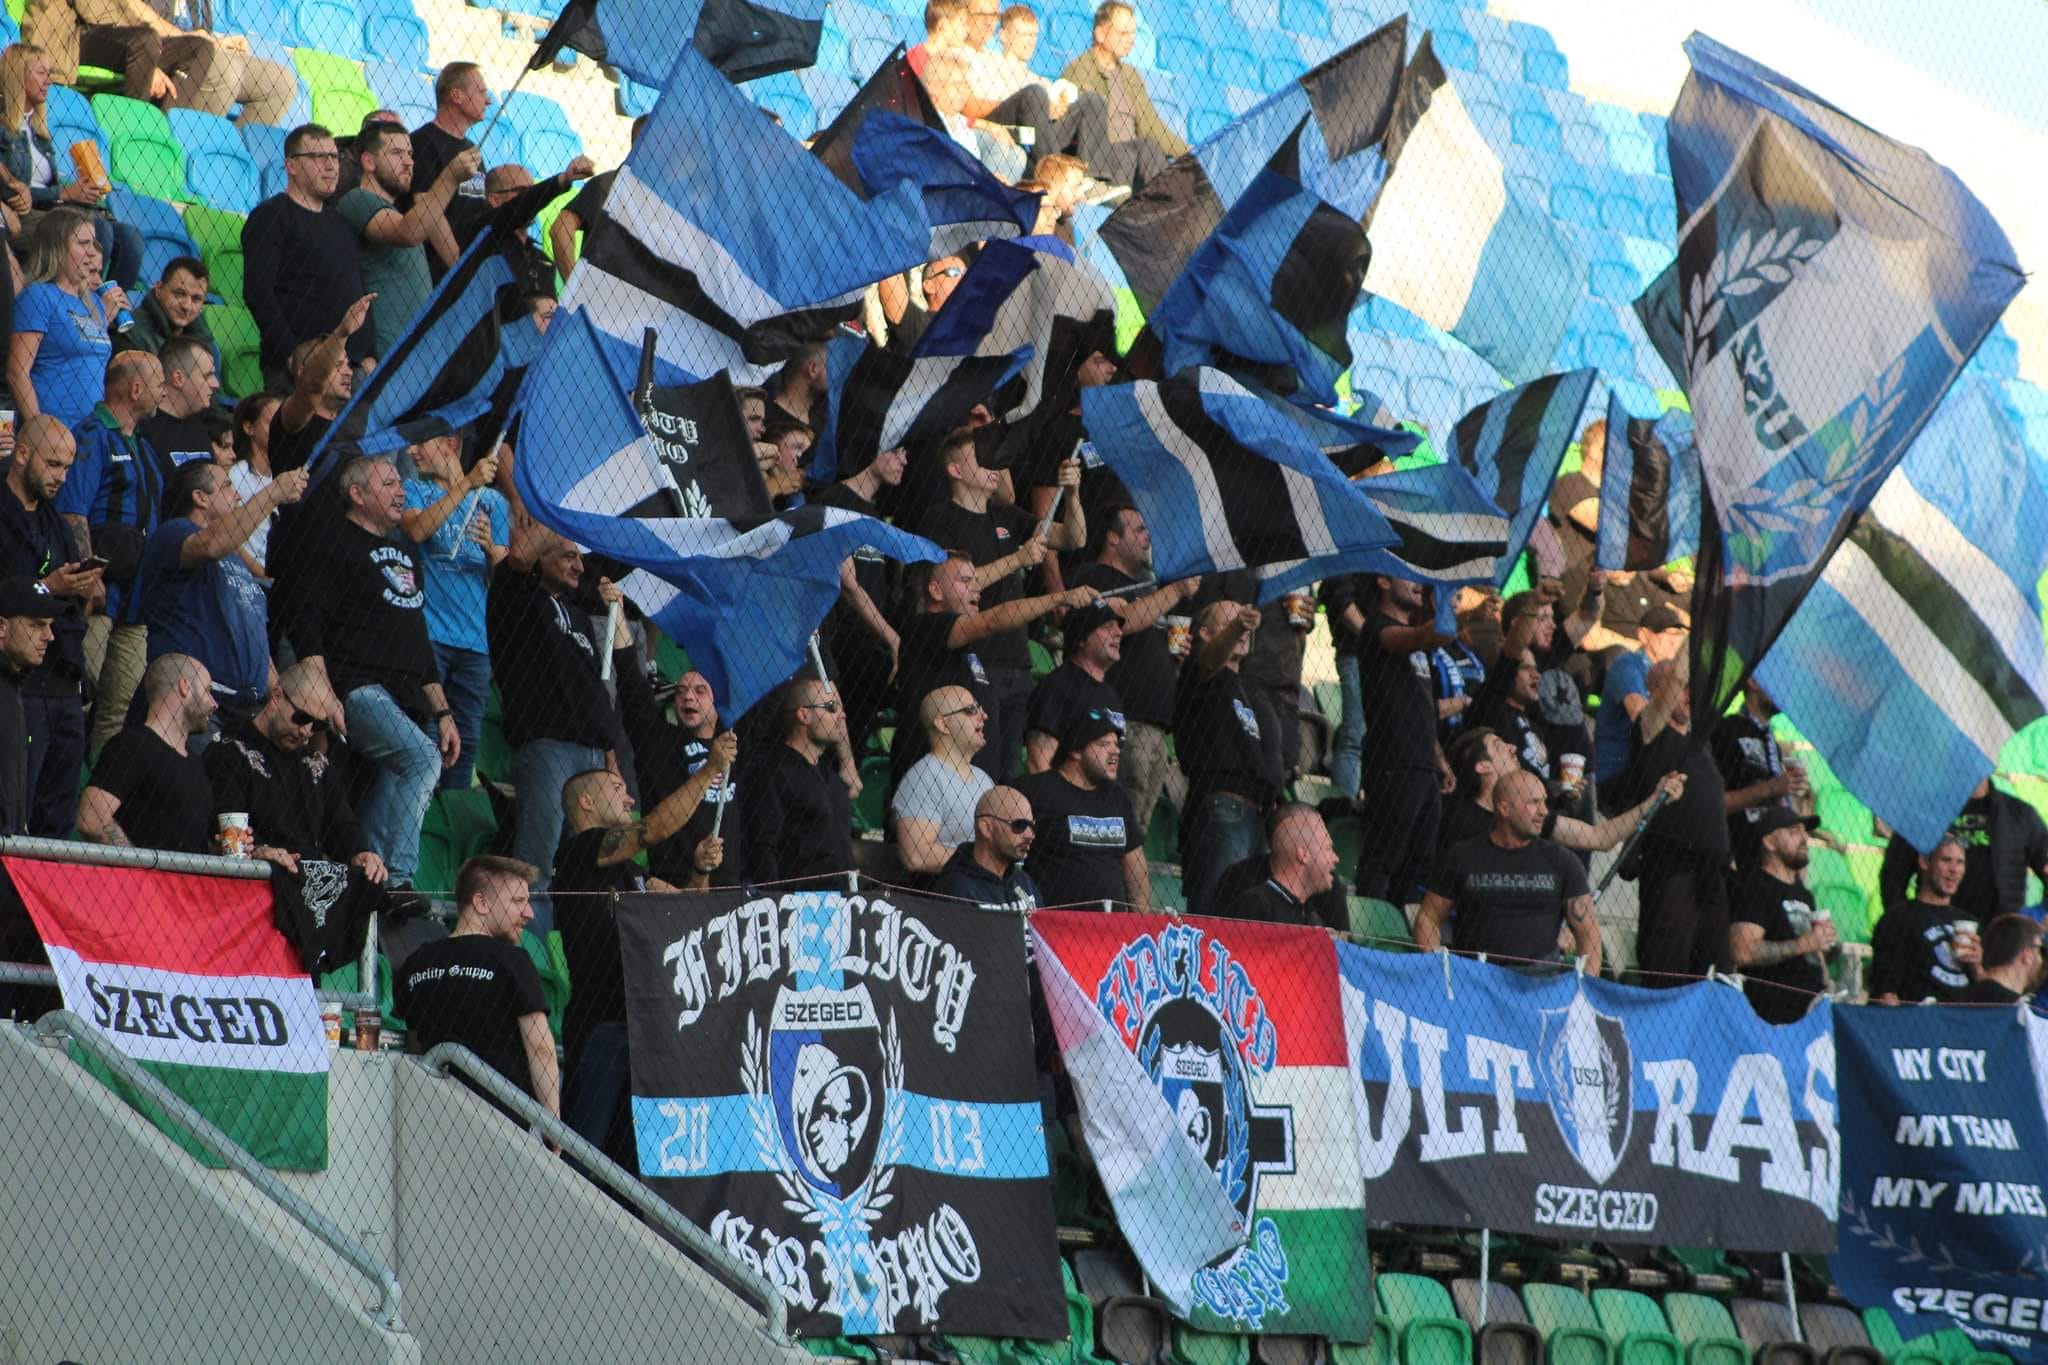 “Zsidóbűnözés, igenis van zsidóbűnözés” – énekelték a szegedi focicsapat ultrái az MTK-stadion előtt